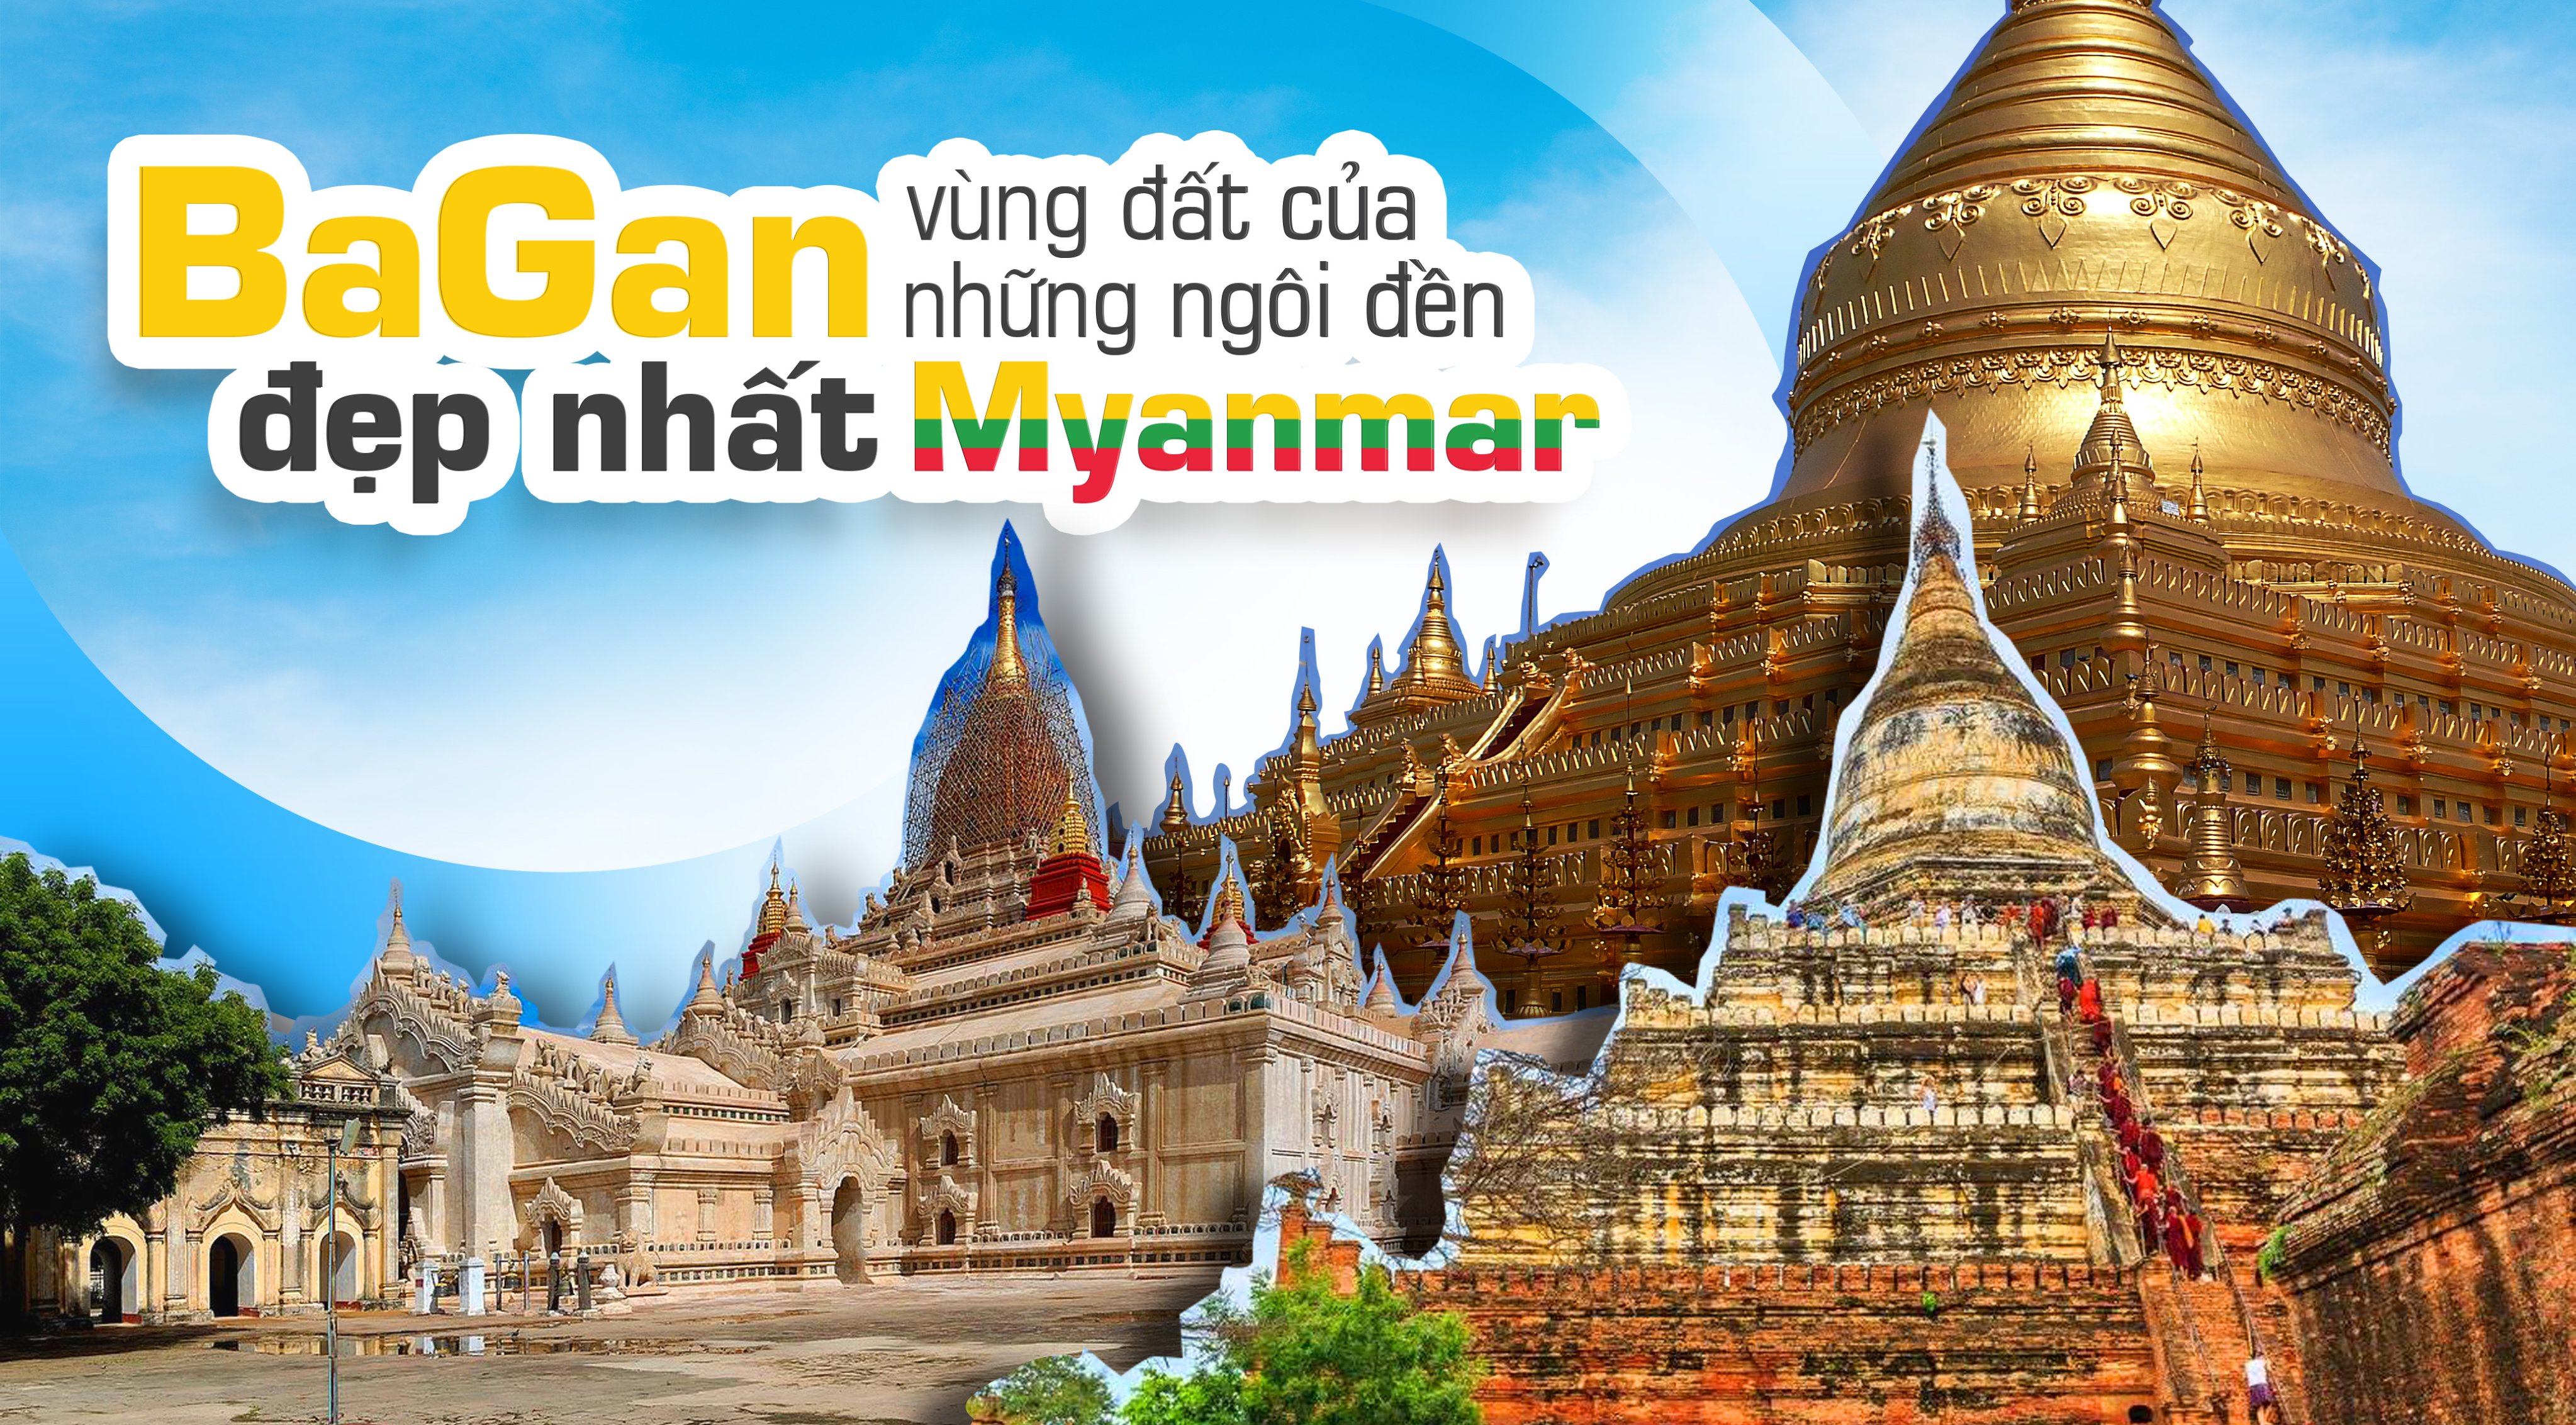 Hãy đến với nơi linh thiêng ngập tràn tại Ngôi đền Bagan ở Myanmar, nơi được UNESCO công nhận là di sản thế giới. Những cột đá cổ kính và khung cảnh lãng mạn sẽ khiến bạn cảm nhận được sự thanh tịnh tuyệt vời của đời sống.